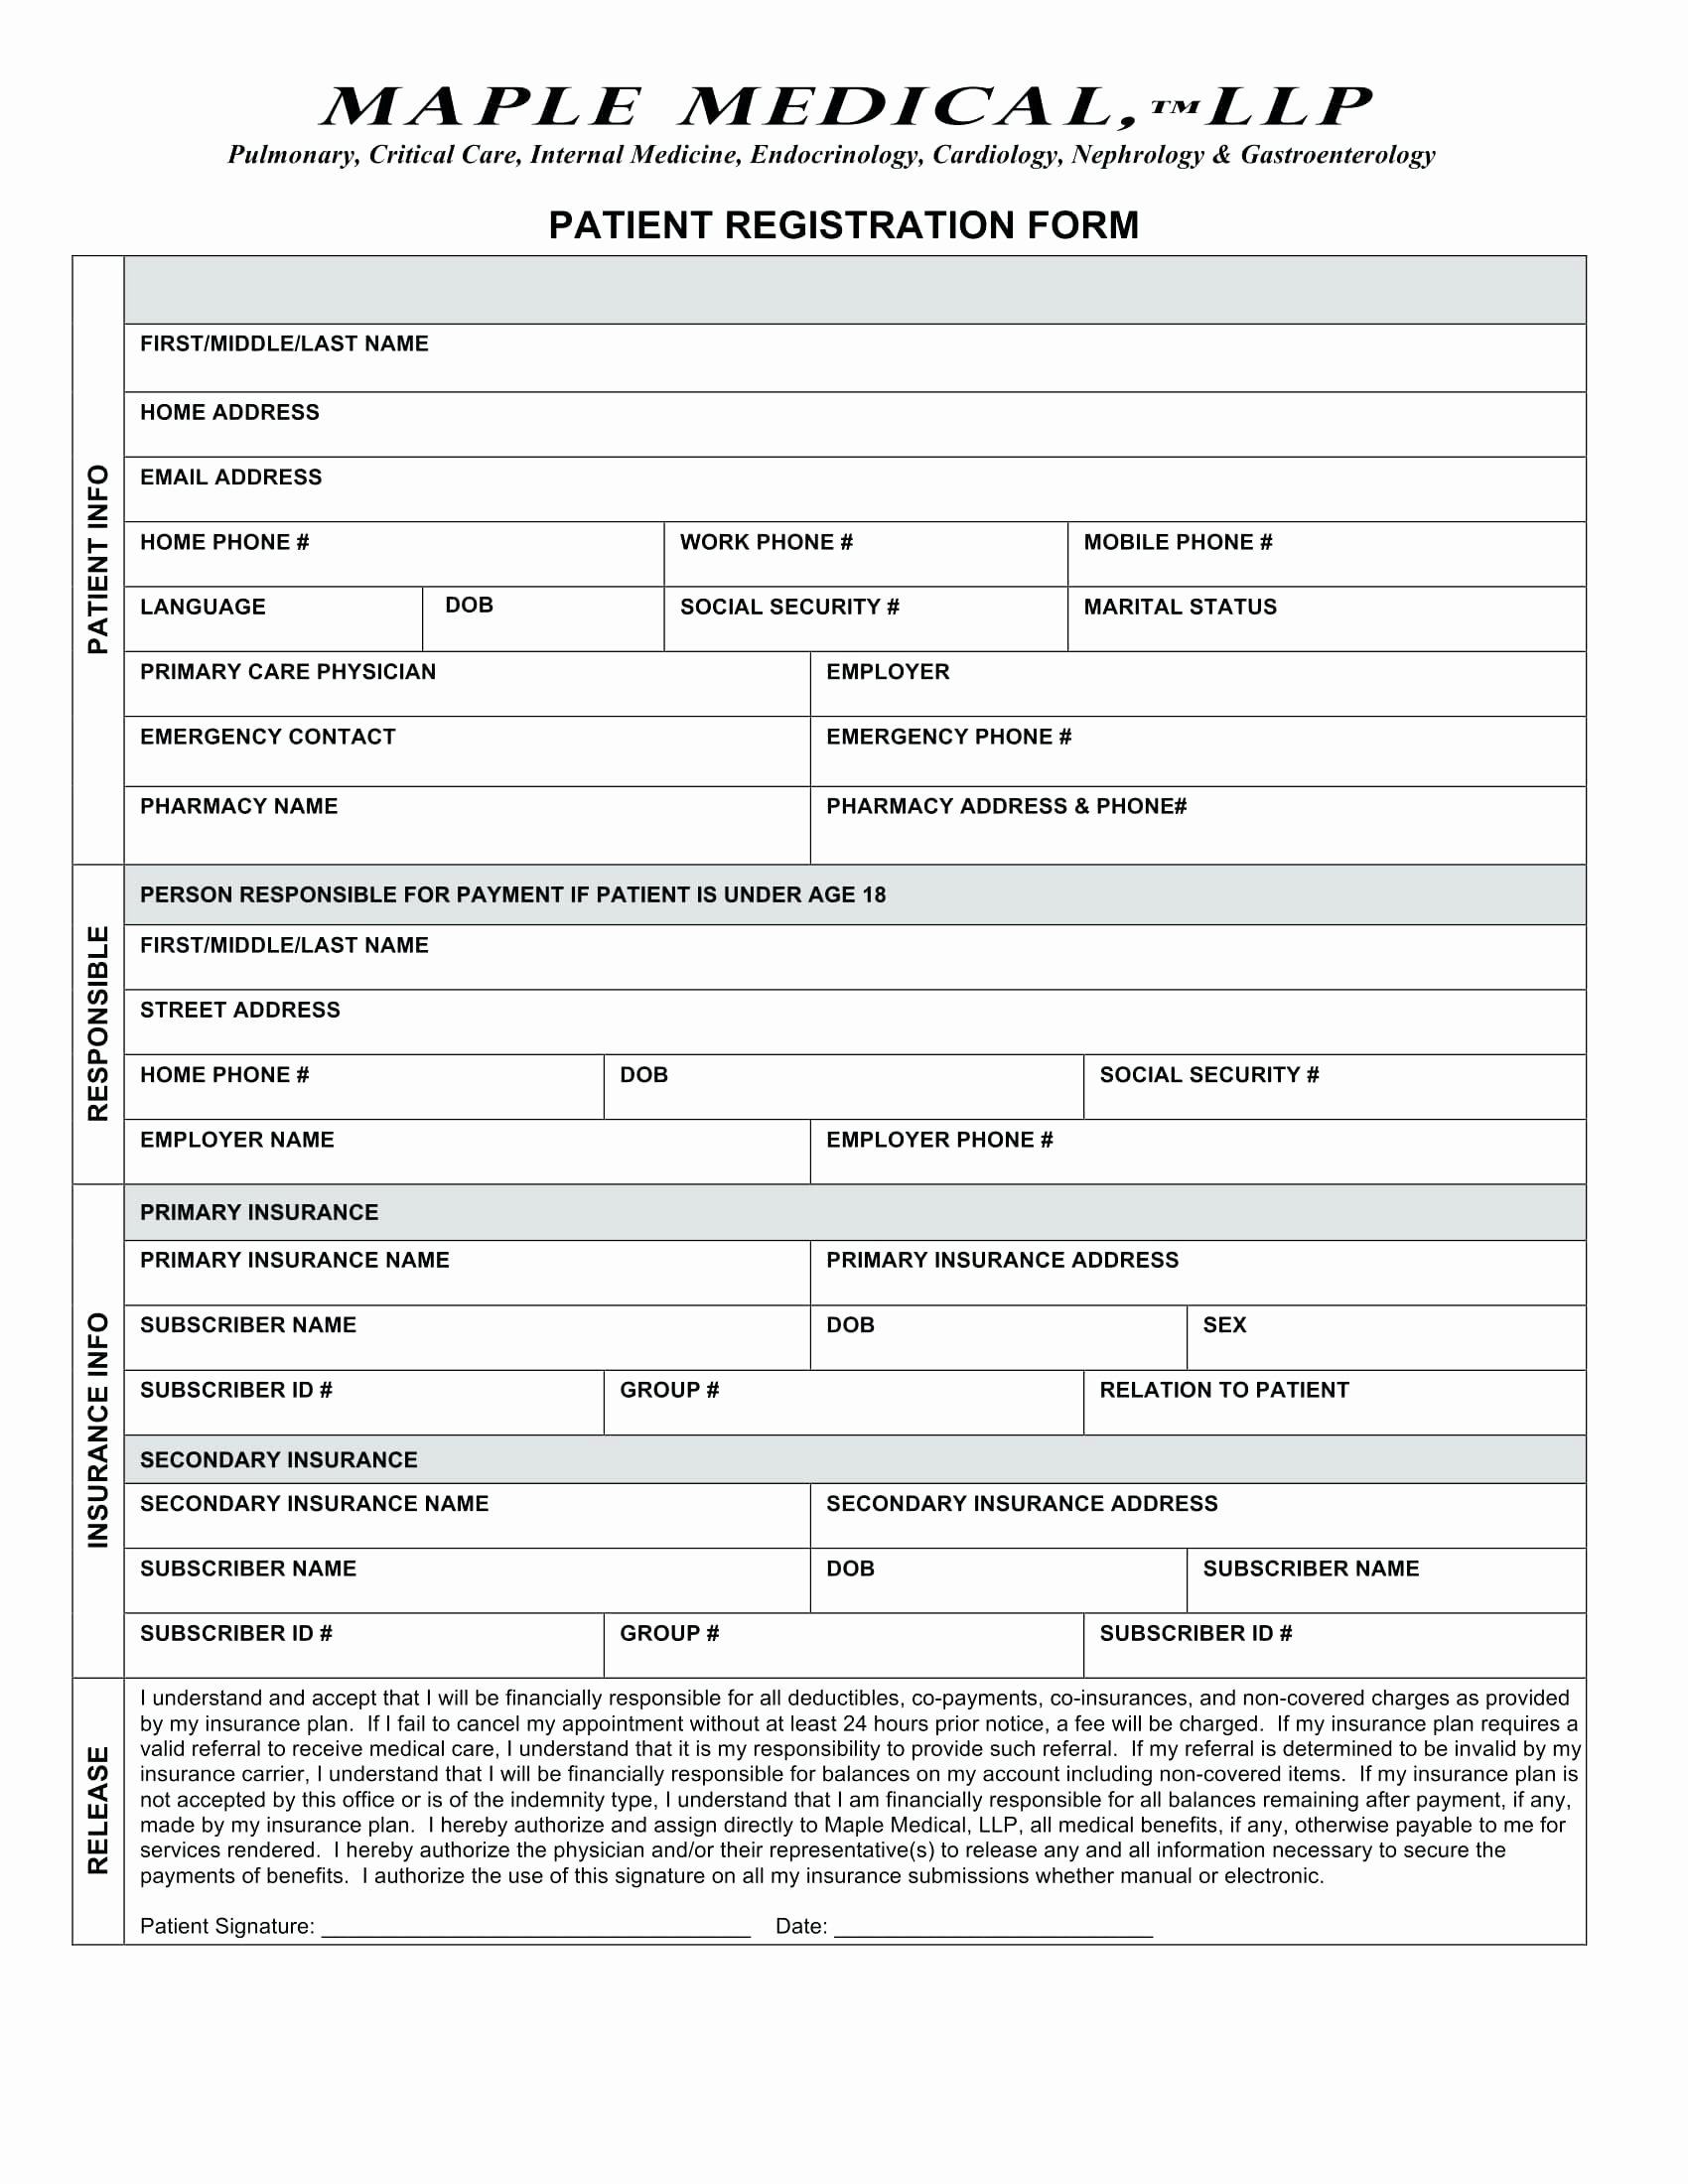 Patient Registration form Template Unique Patient Registration form Patient Registration form